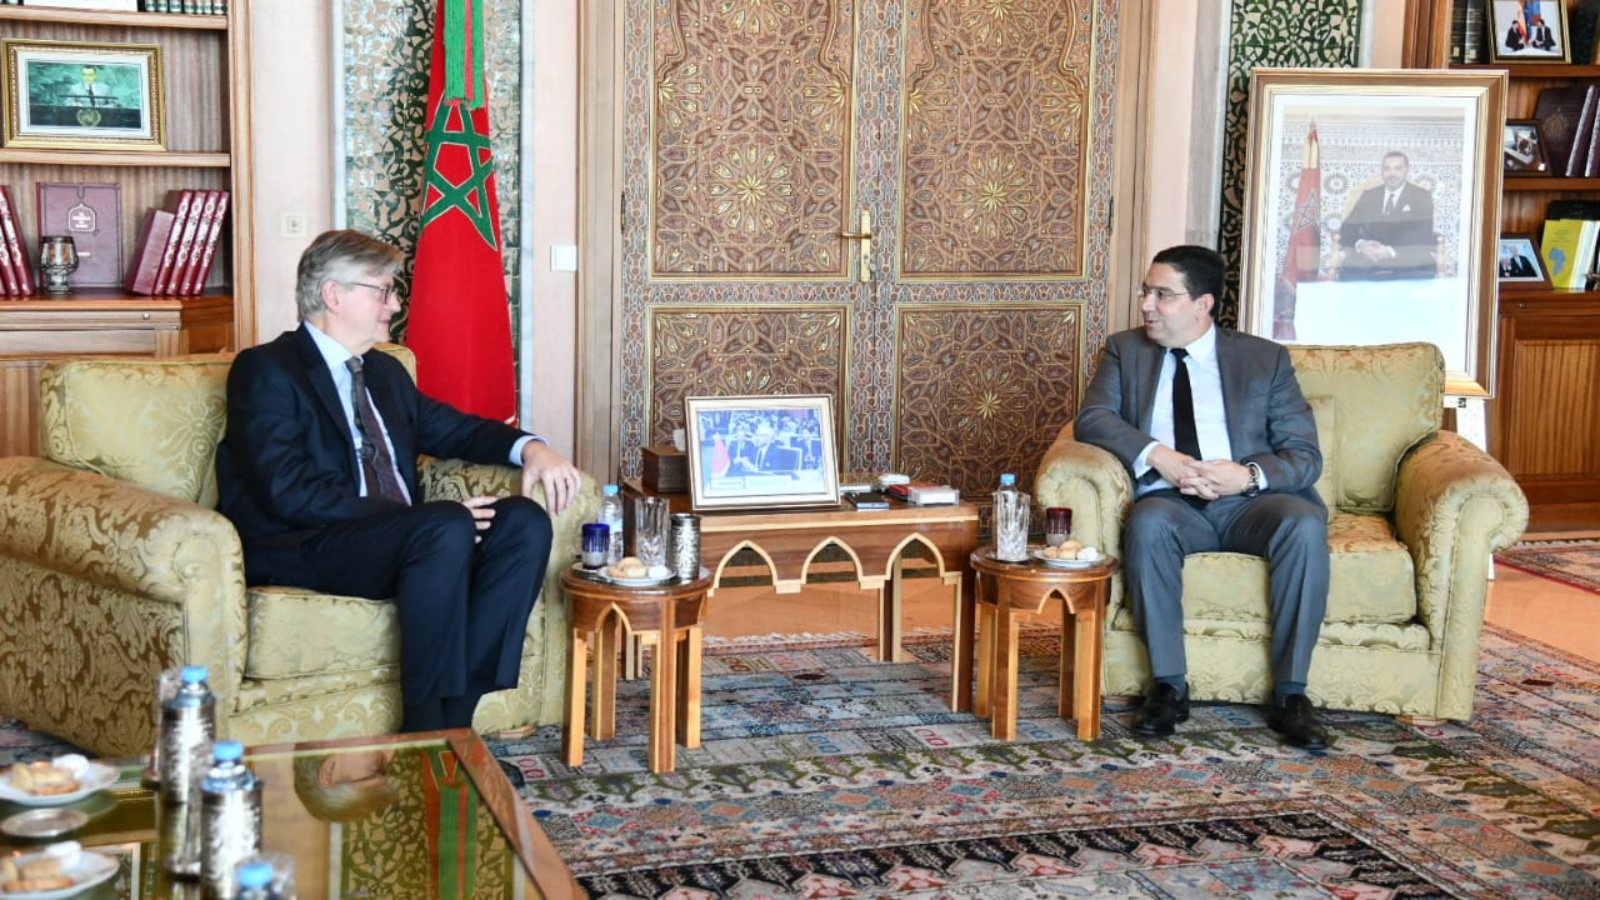 وزير خارجية المغرب لدى استقباله وكيل الأمين العام للأمم المتحدة لعمليات السلام